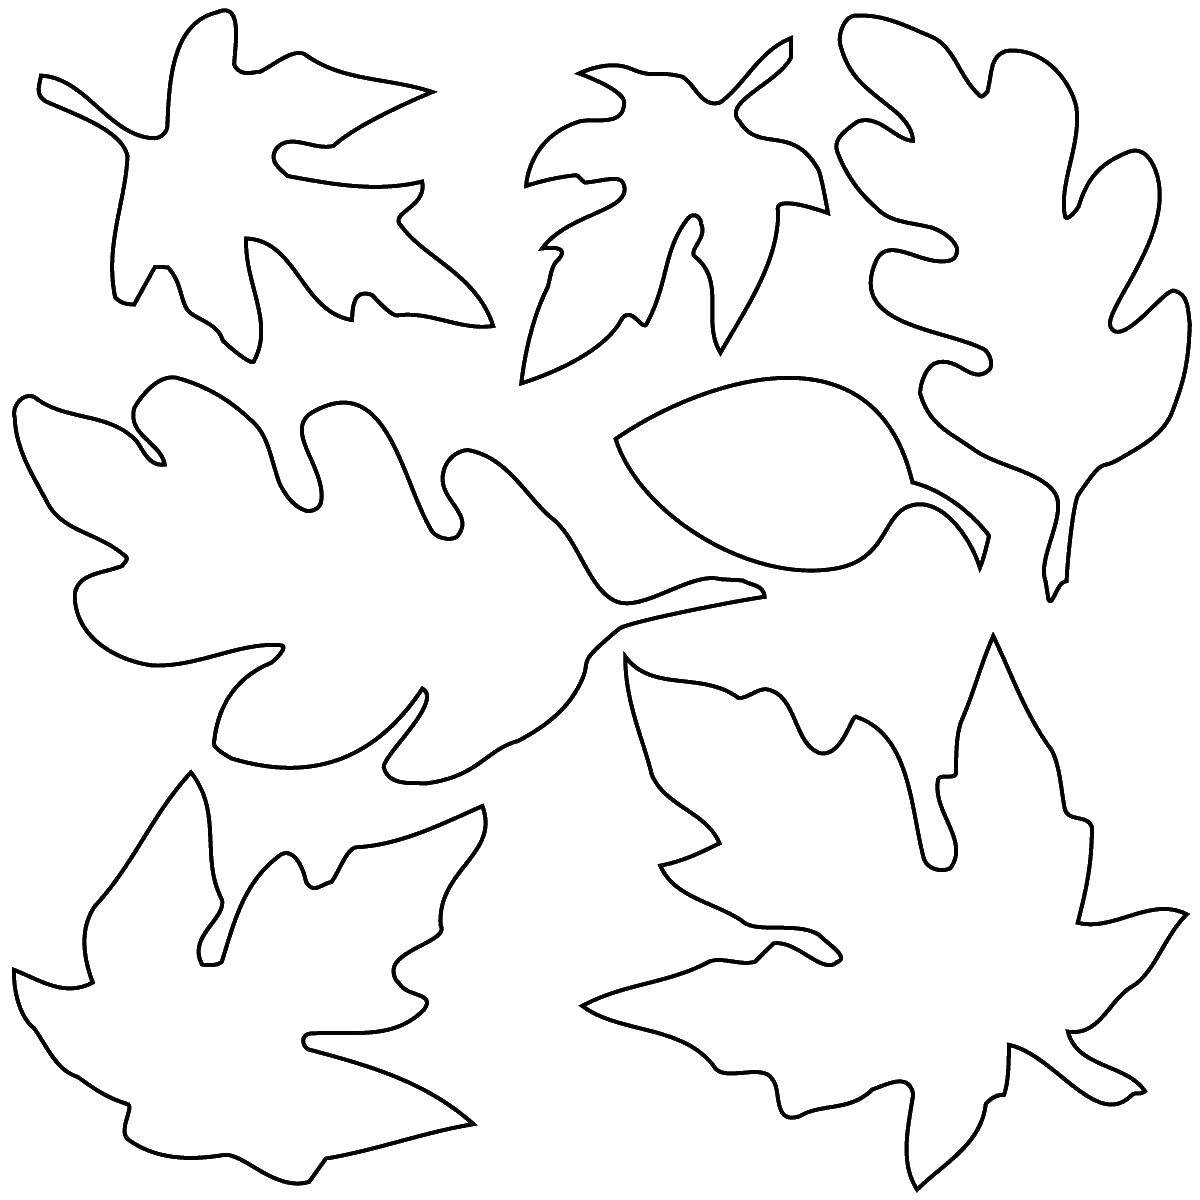 Название: Раскраска Листья. Категория: Контуры листьев деревьев. Теги: листья.